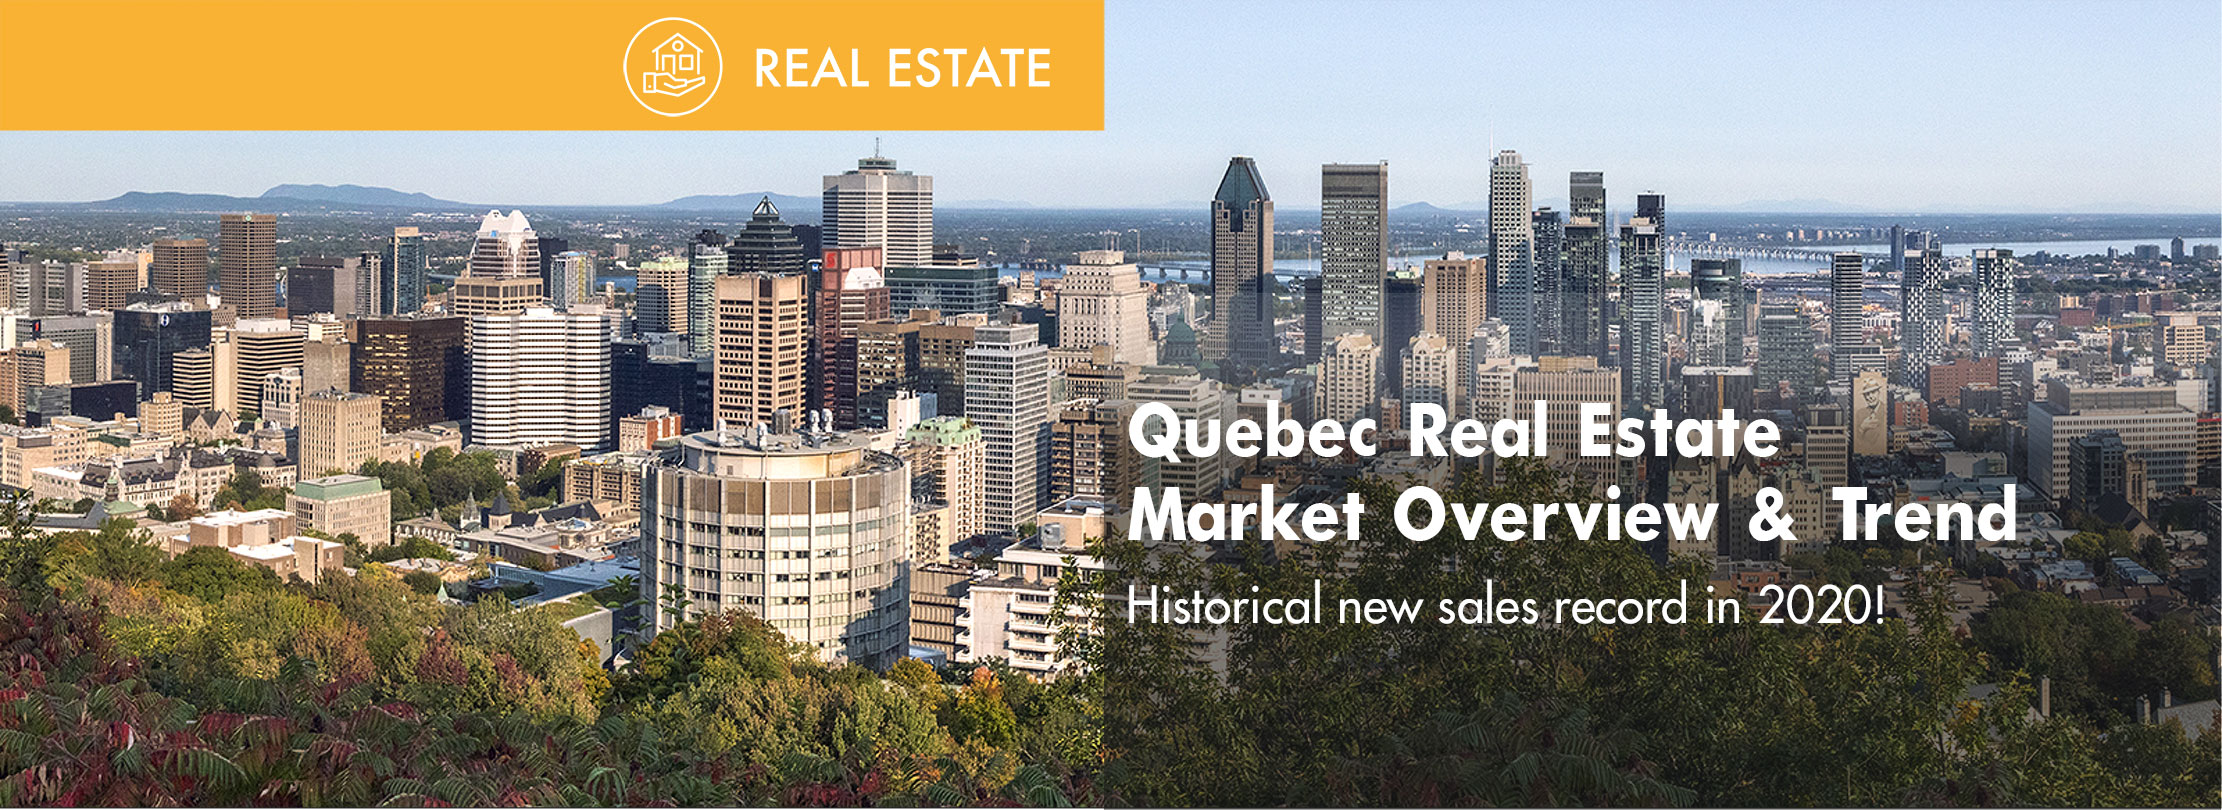 Quebec Real Estate Market Overview & Trend